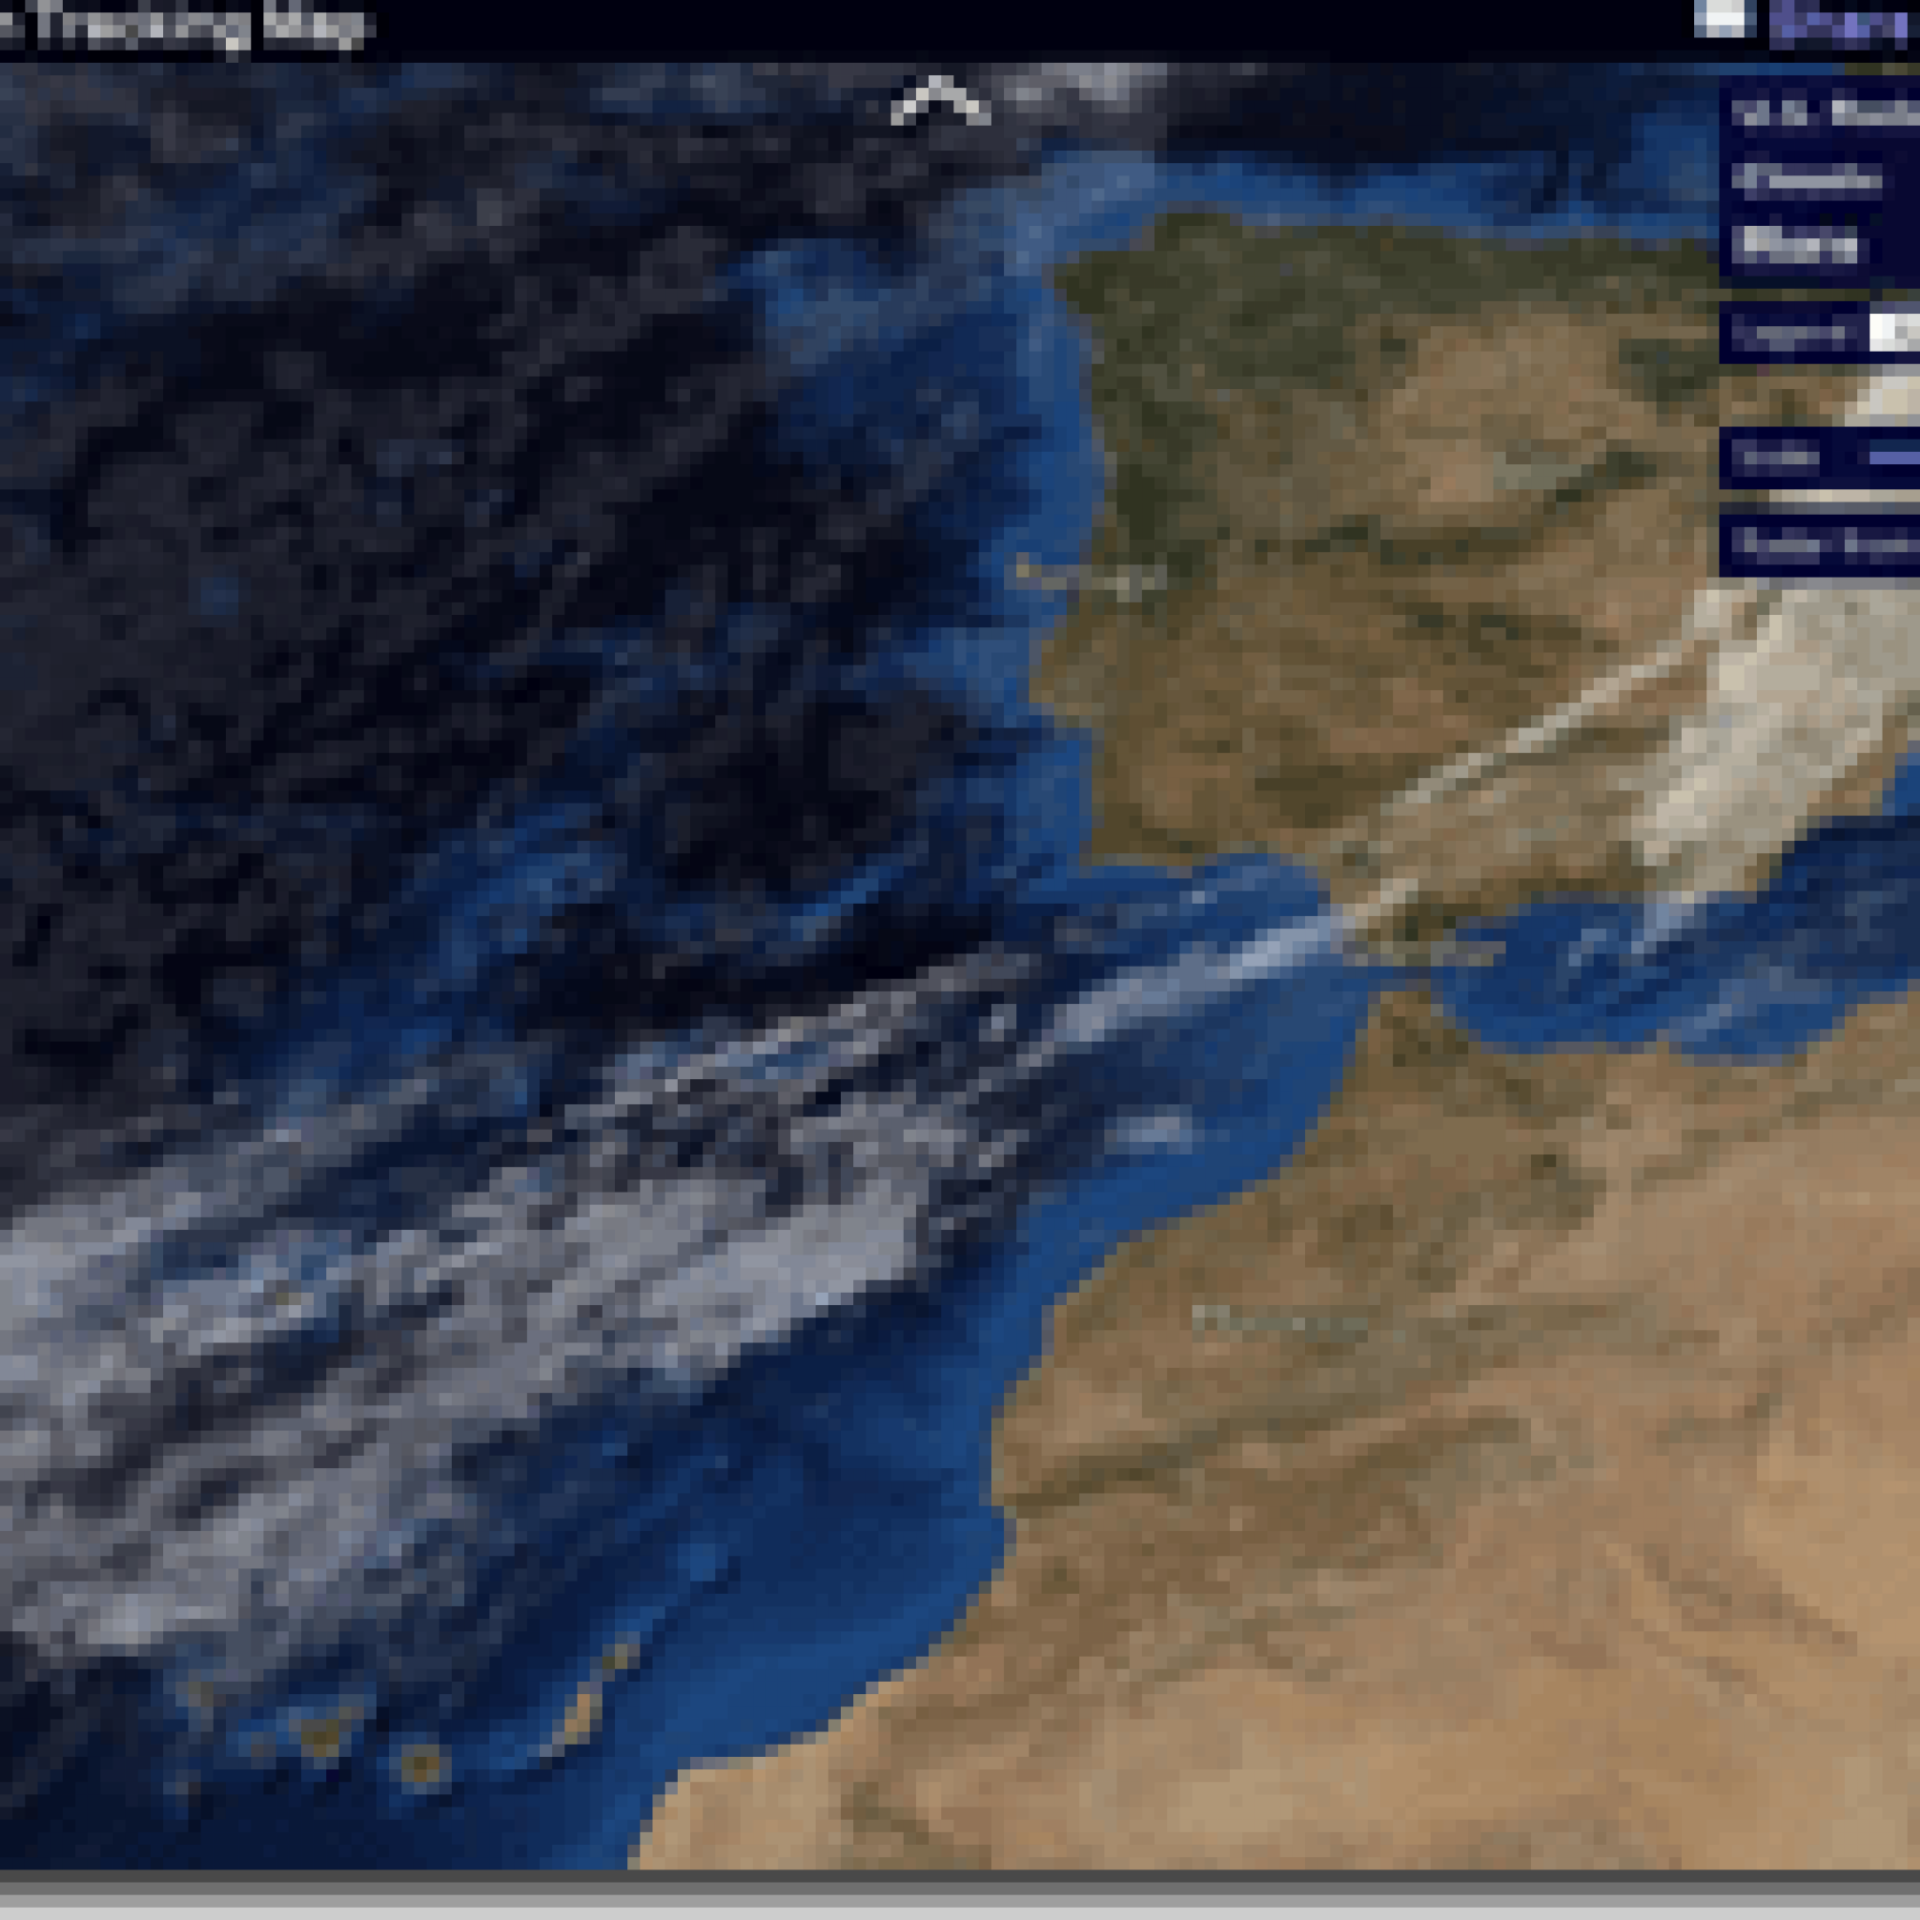 Stormpulse: Huracanes En Tiempo Real